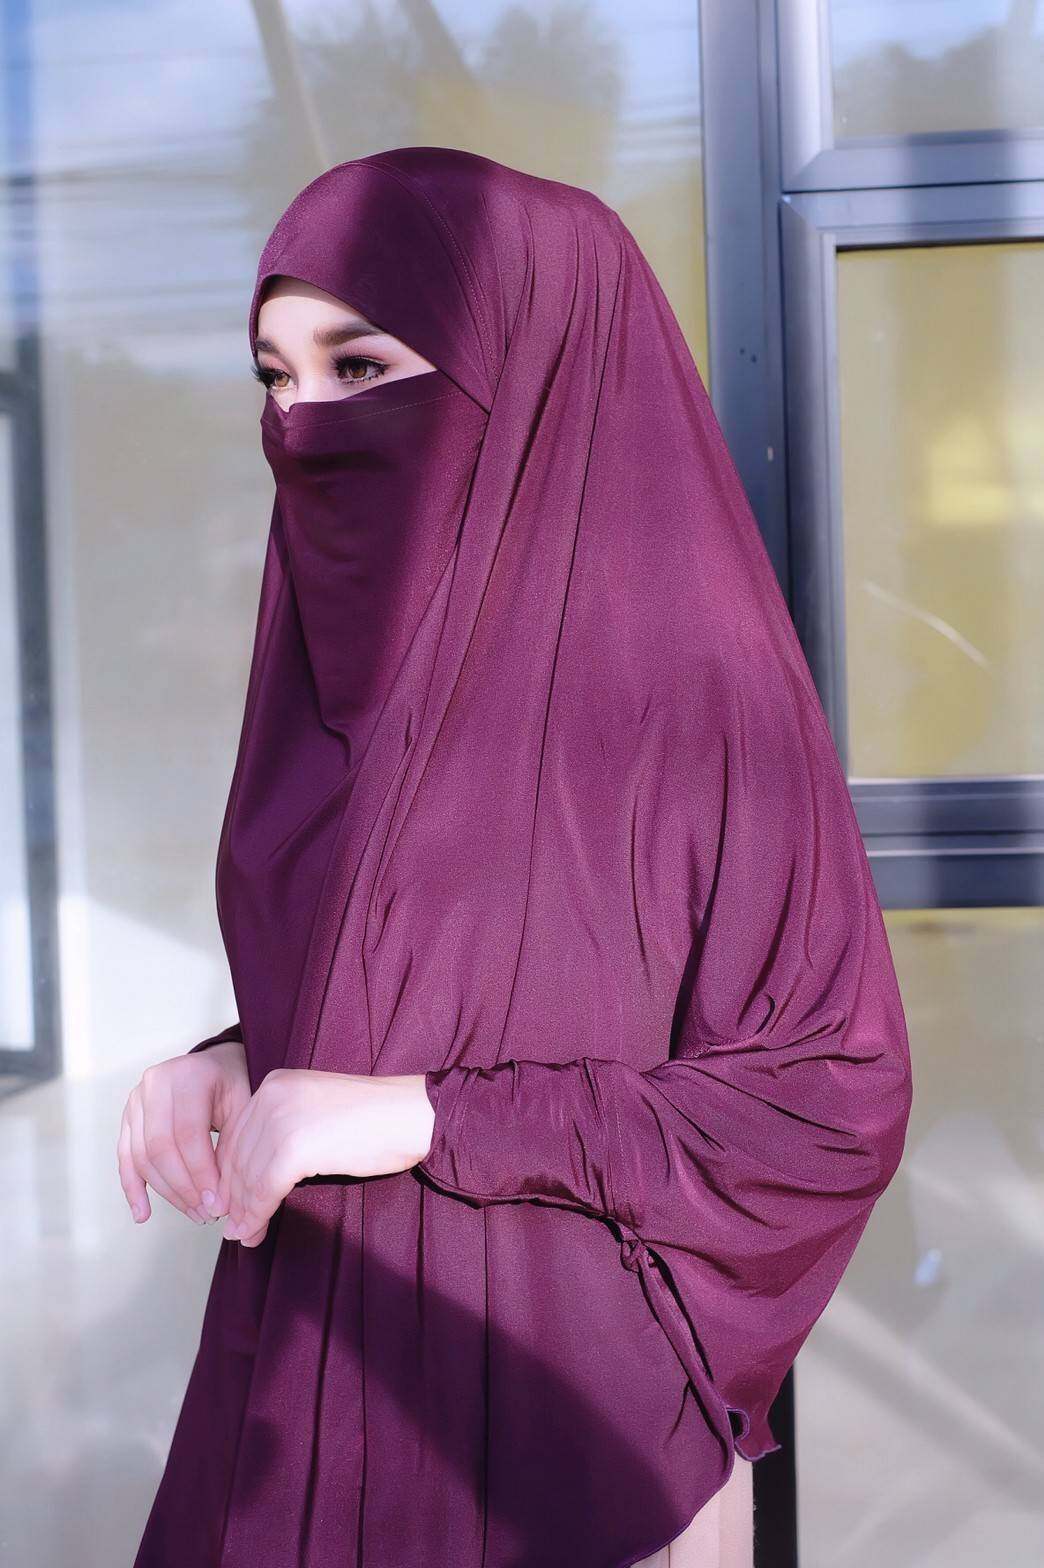 hijab ฮิญาบผรั่งเศสมีแขนรุ่นนี้สะดวกมากๆใส่ง่ายใส่สวยดูดี เปิด-ปิดหน้าได้ มีแขนในตัวมีเชือกผูกด้านใน